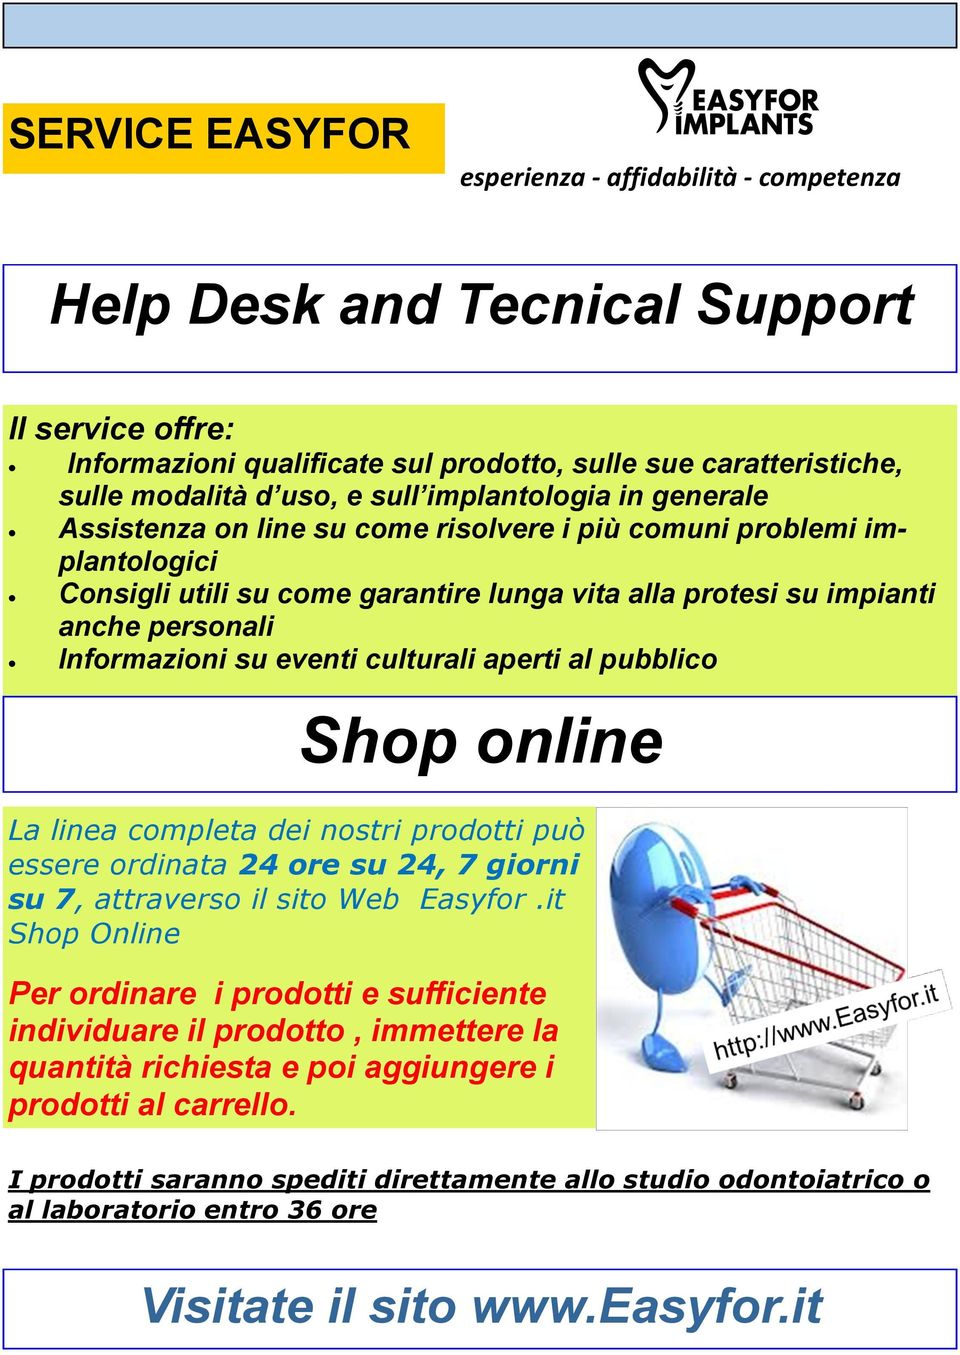 Shop online La linea completa dei nostri prodotti può essere ordinata 24 ore su 24, 7 giorni su 7, attraverso il sito Web Easyfor.